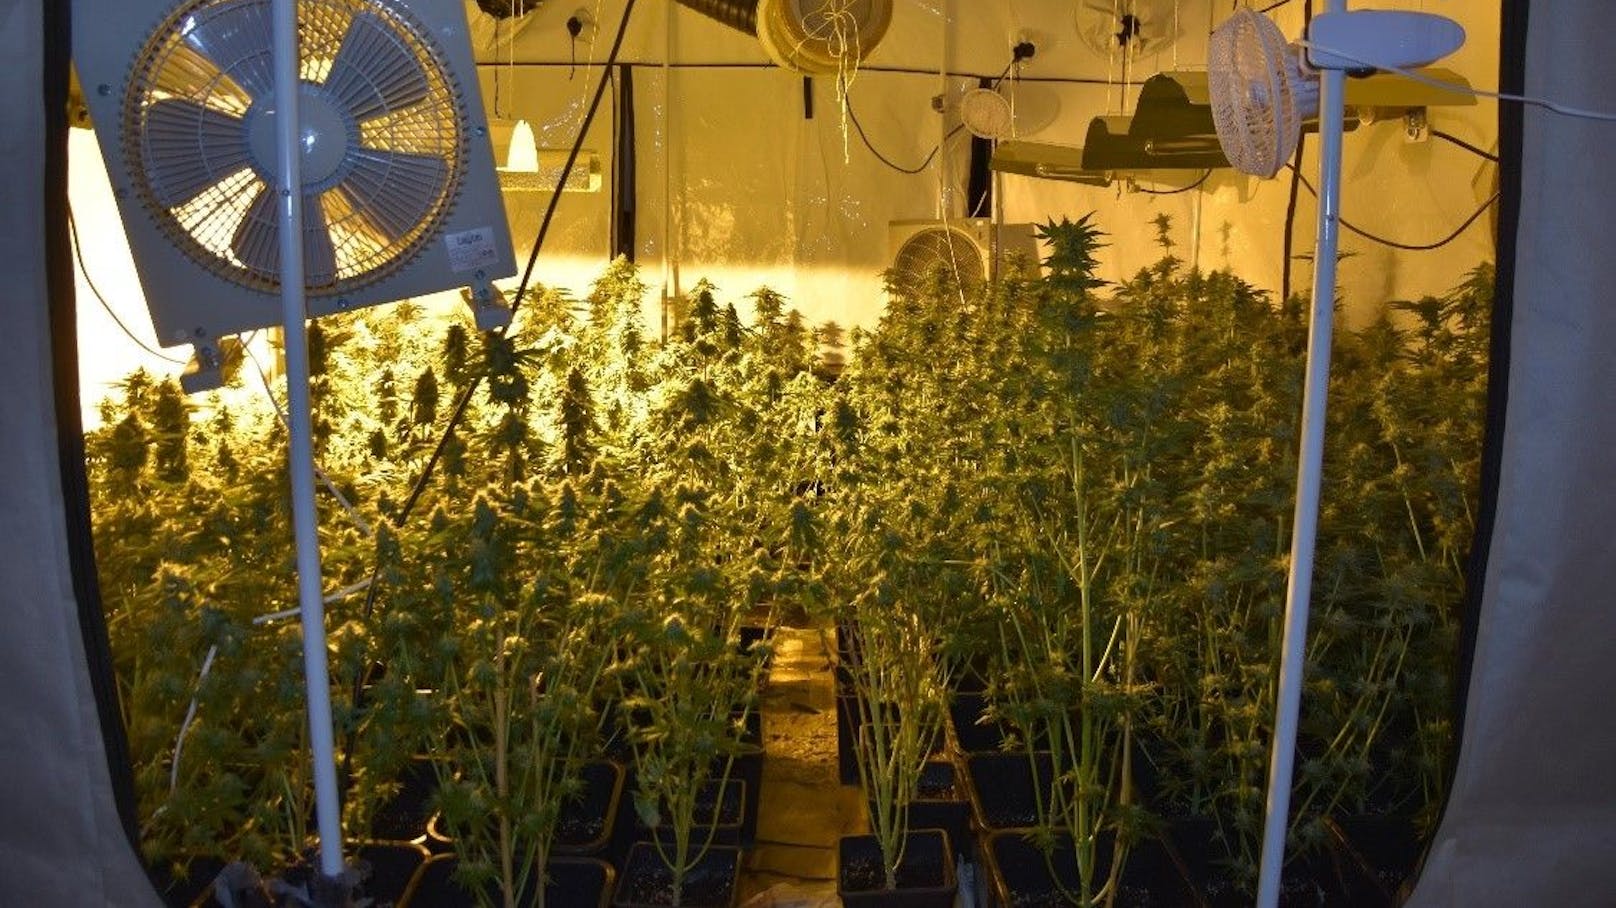 216 Cannabispflanzen wurden in einem leerstehendem Bürogebäude sichergestellt.